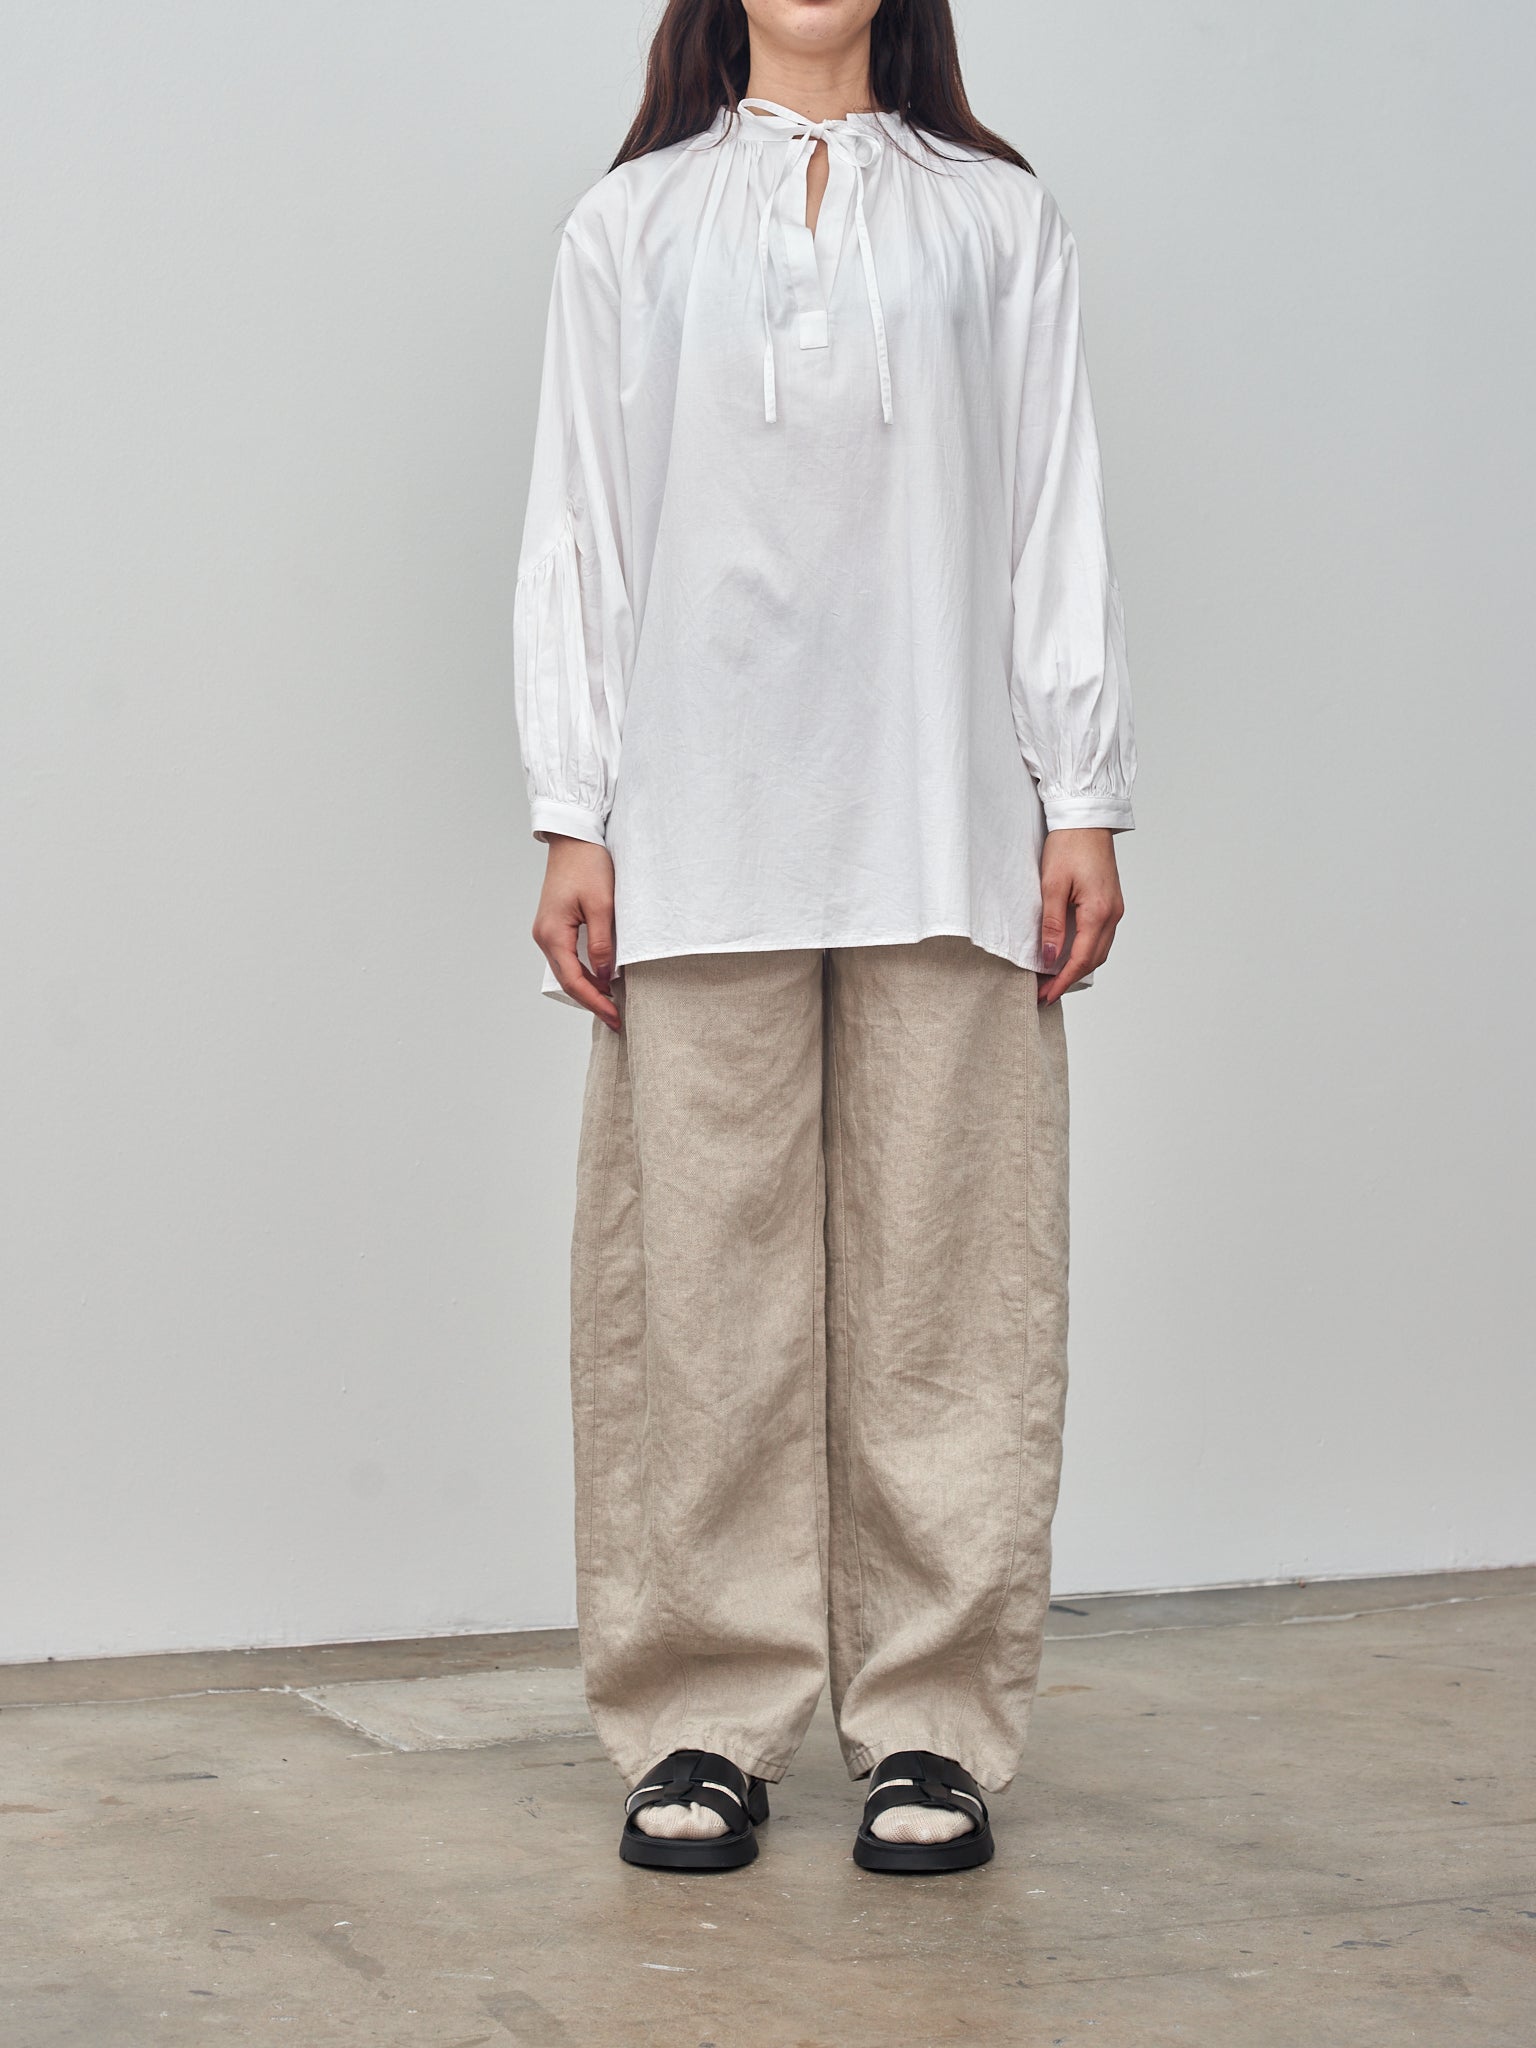 Namu Shop - Sayaka Davis Puffy Sleeve Blouse - White